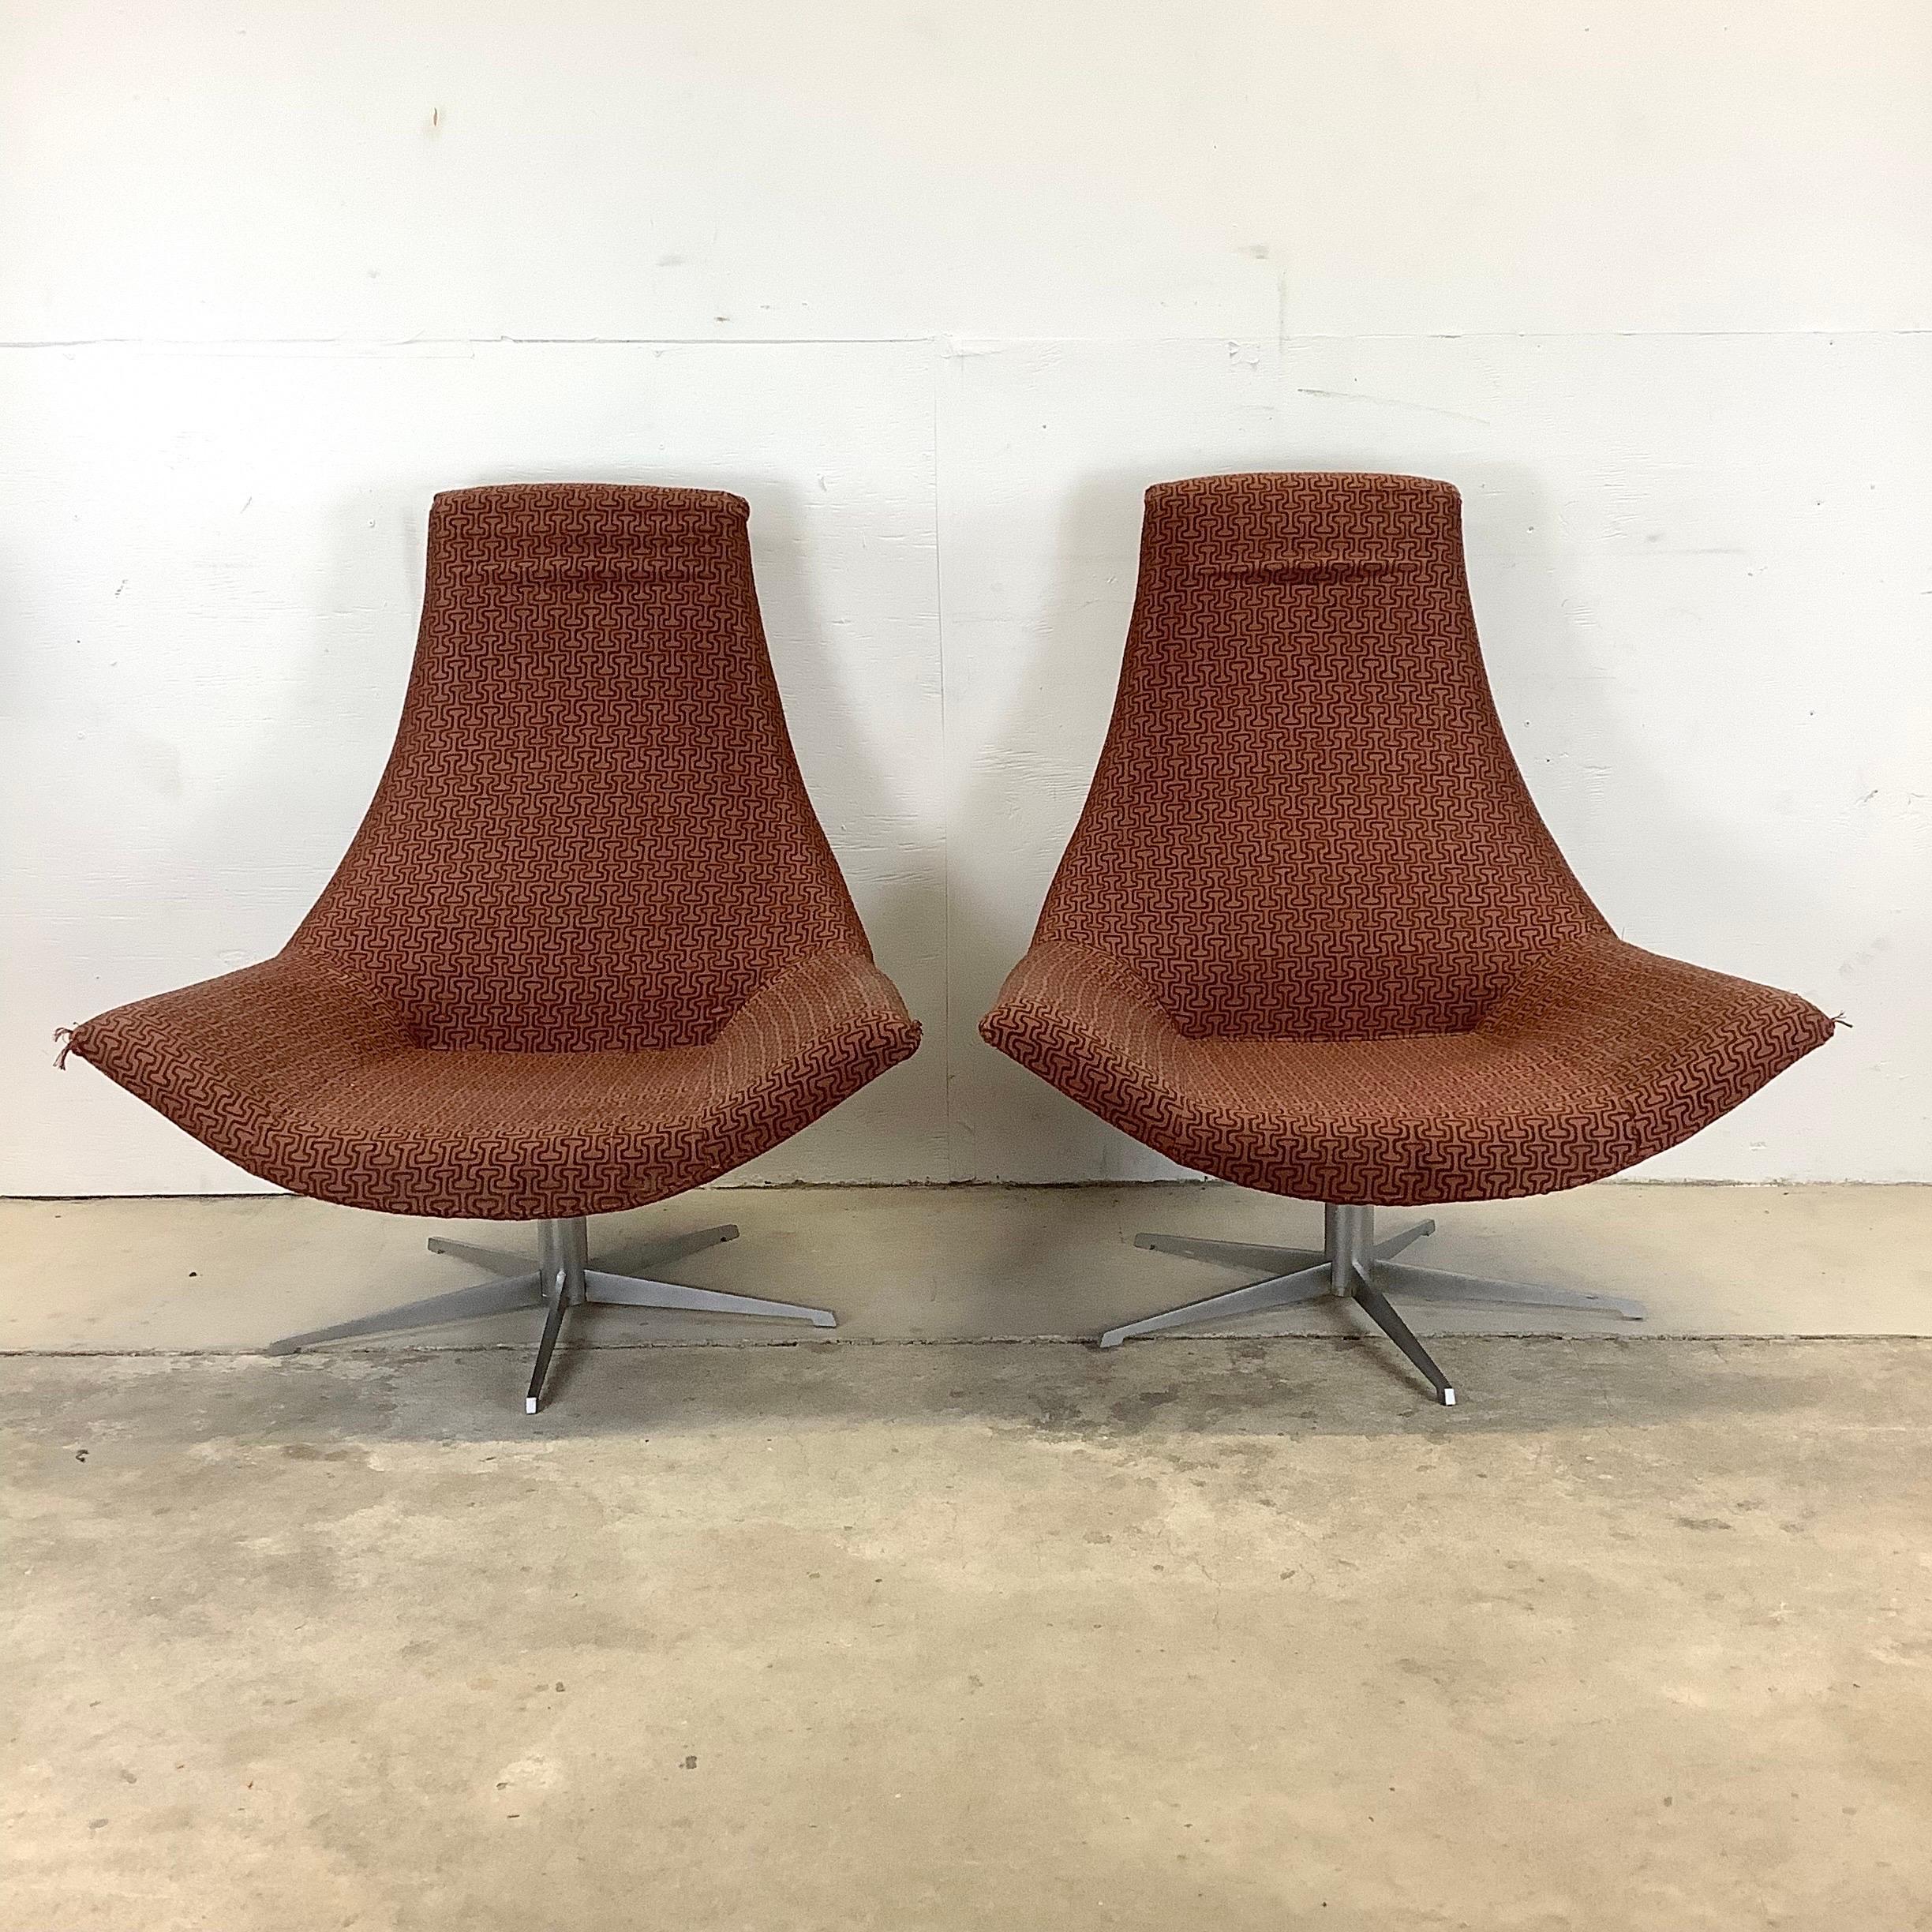 Cette impressionnante paire de chaises de salon modernes assorties présente un design sculptural distinctement italien tout en offrant de larges sièges et des bases métalliques pivotantes. Le rembourrage à motifs géométriques de cette paire